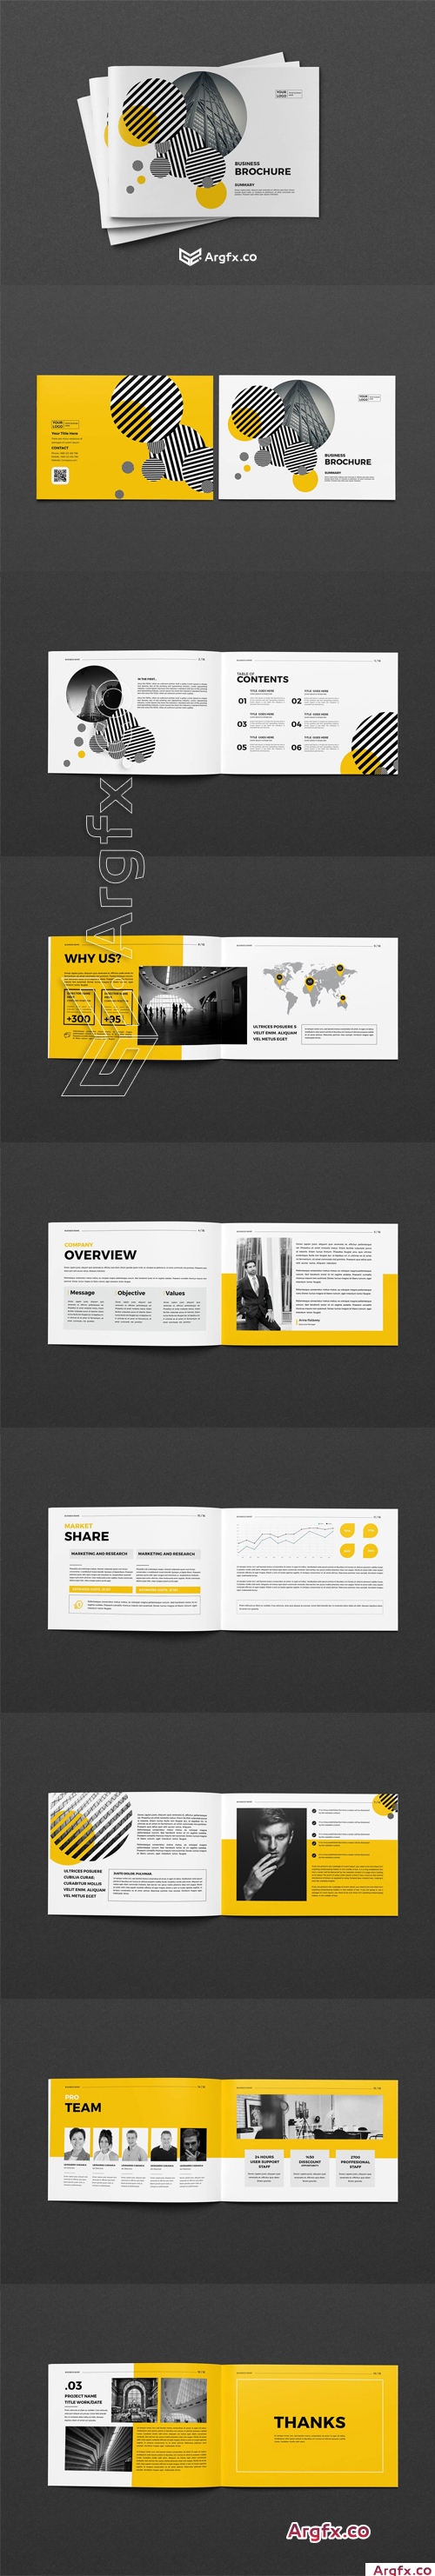 CreativeMarket - A5 Business Brochure 4359298